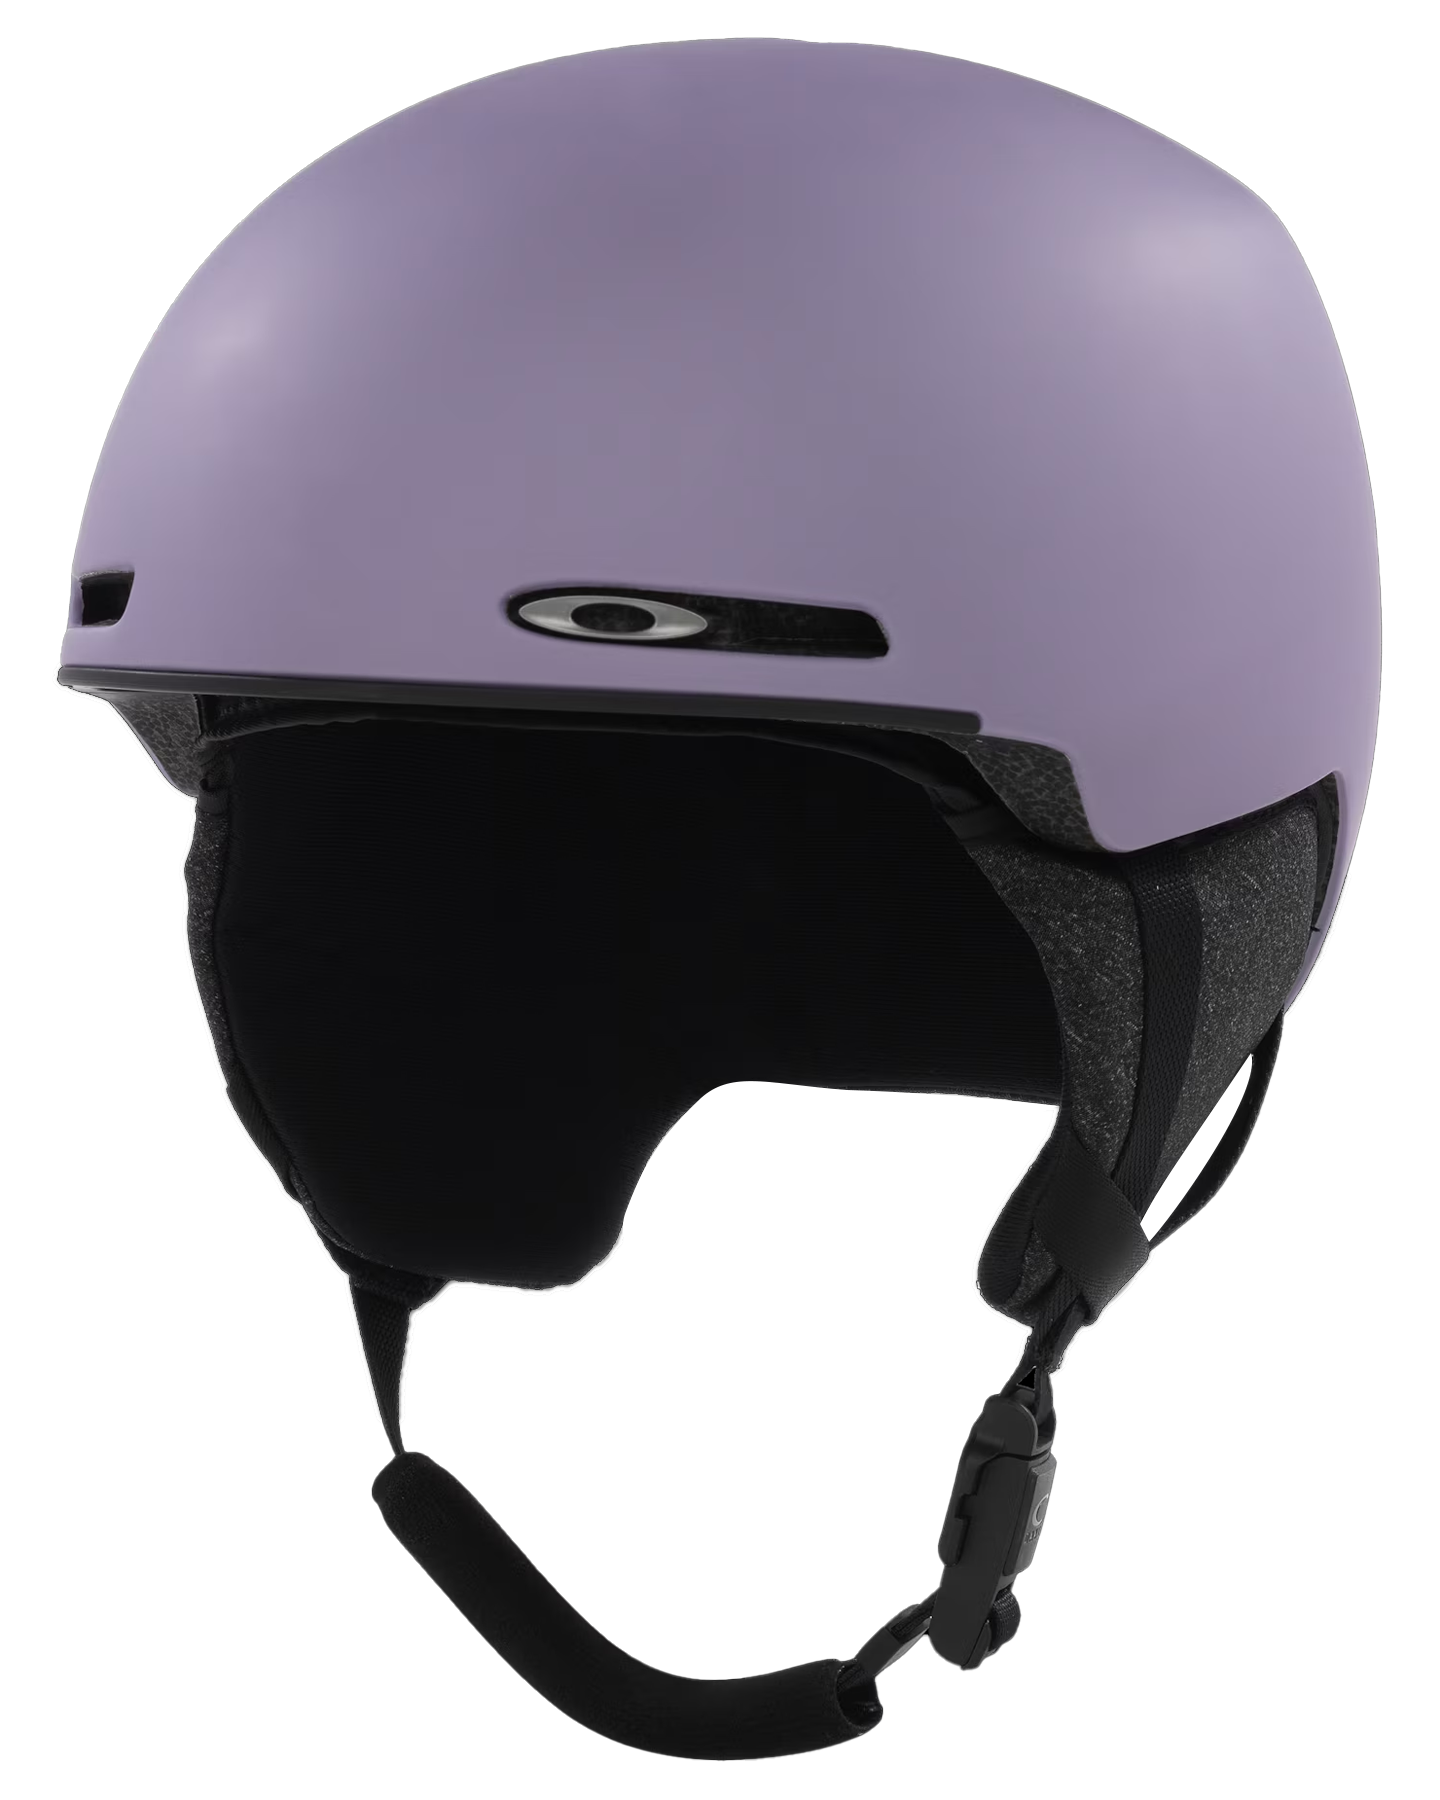 Oakley Mod1 Mips Snow Helmet - Matte Lilac Men's Snow Helmets - SnowSkiersWarehouse